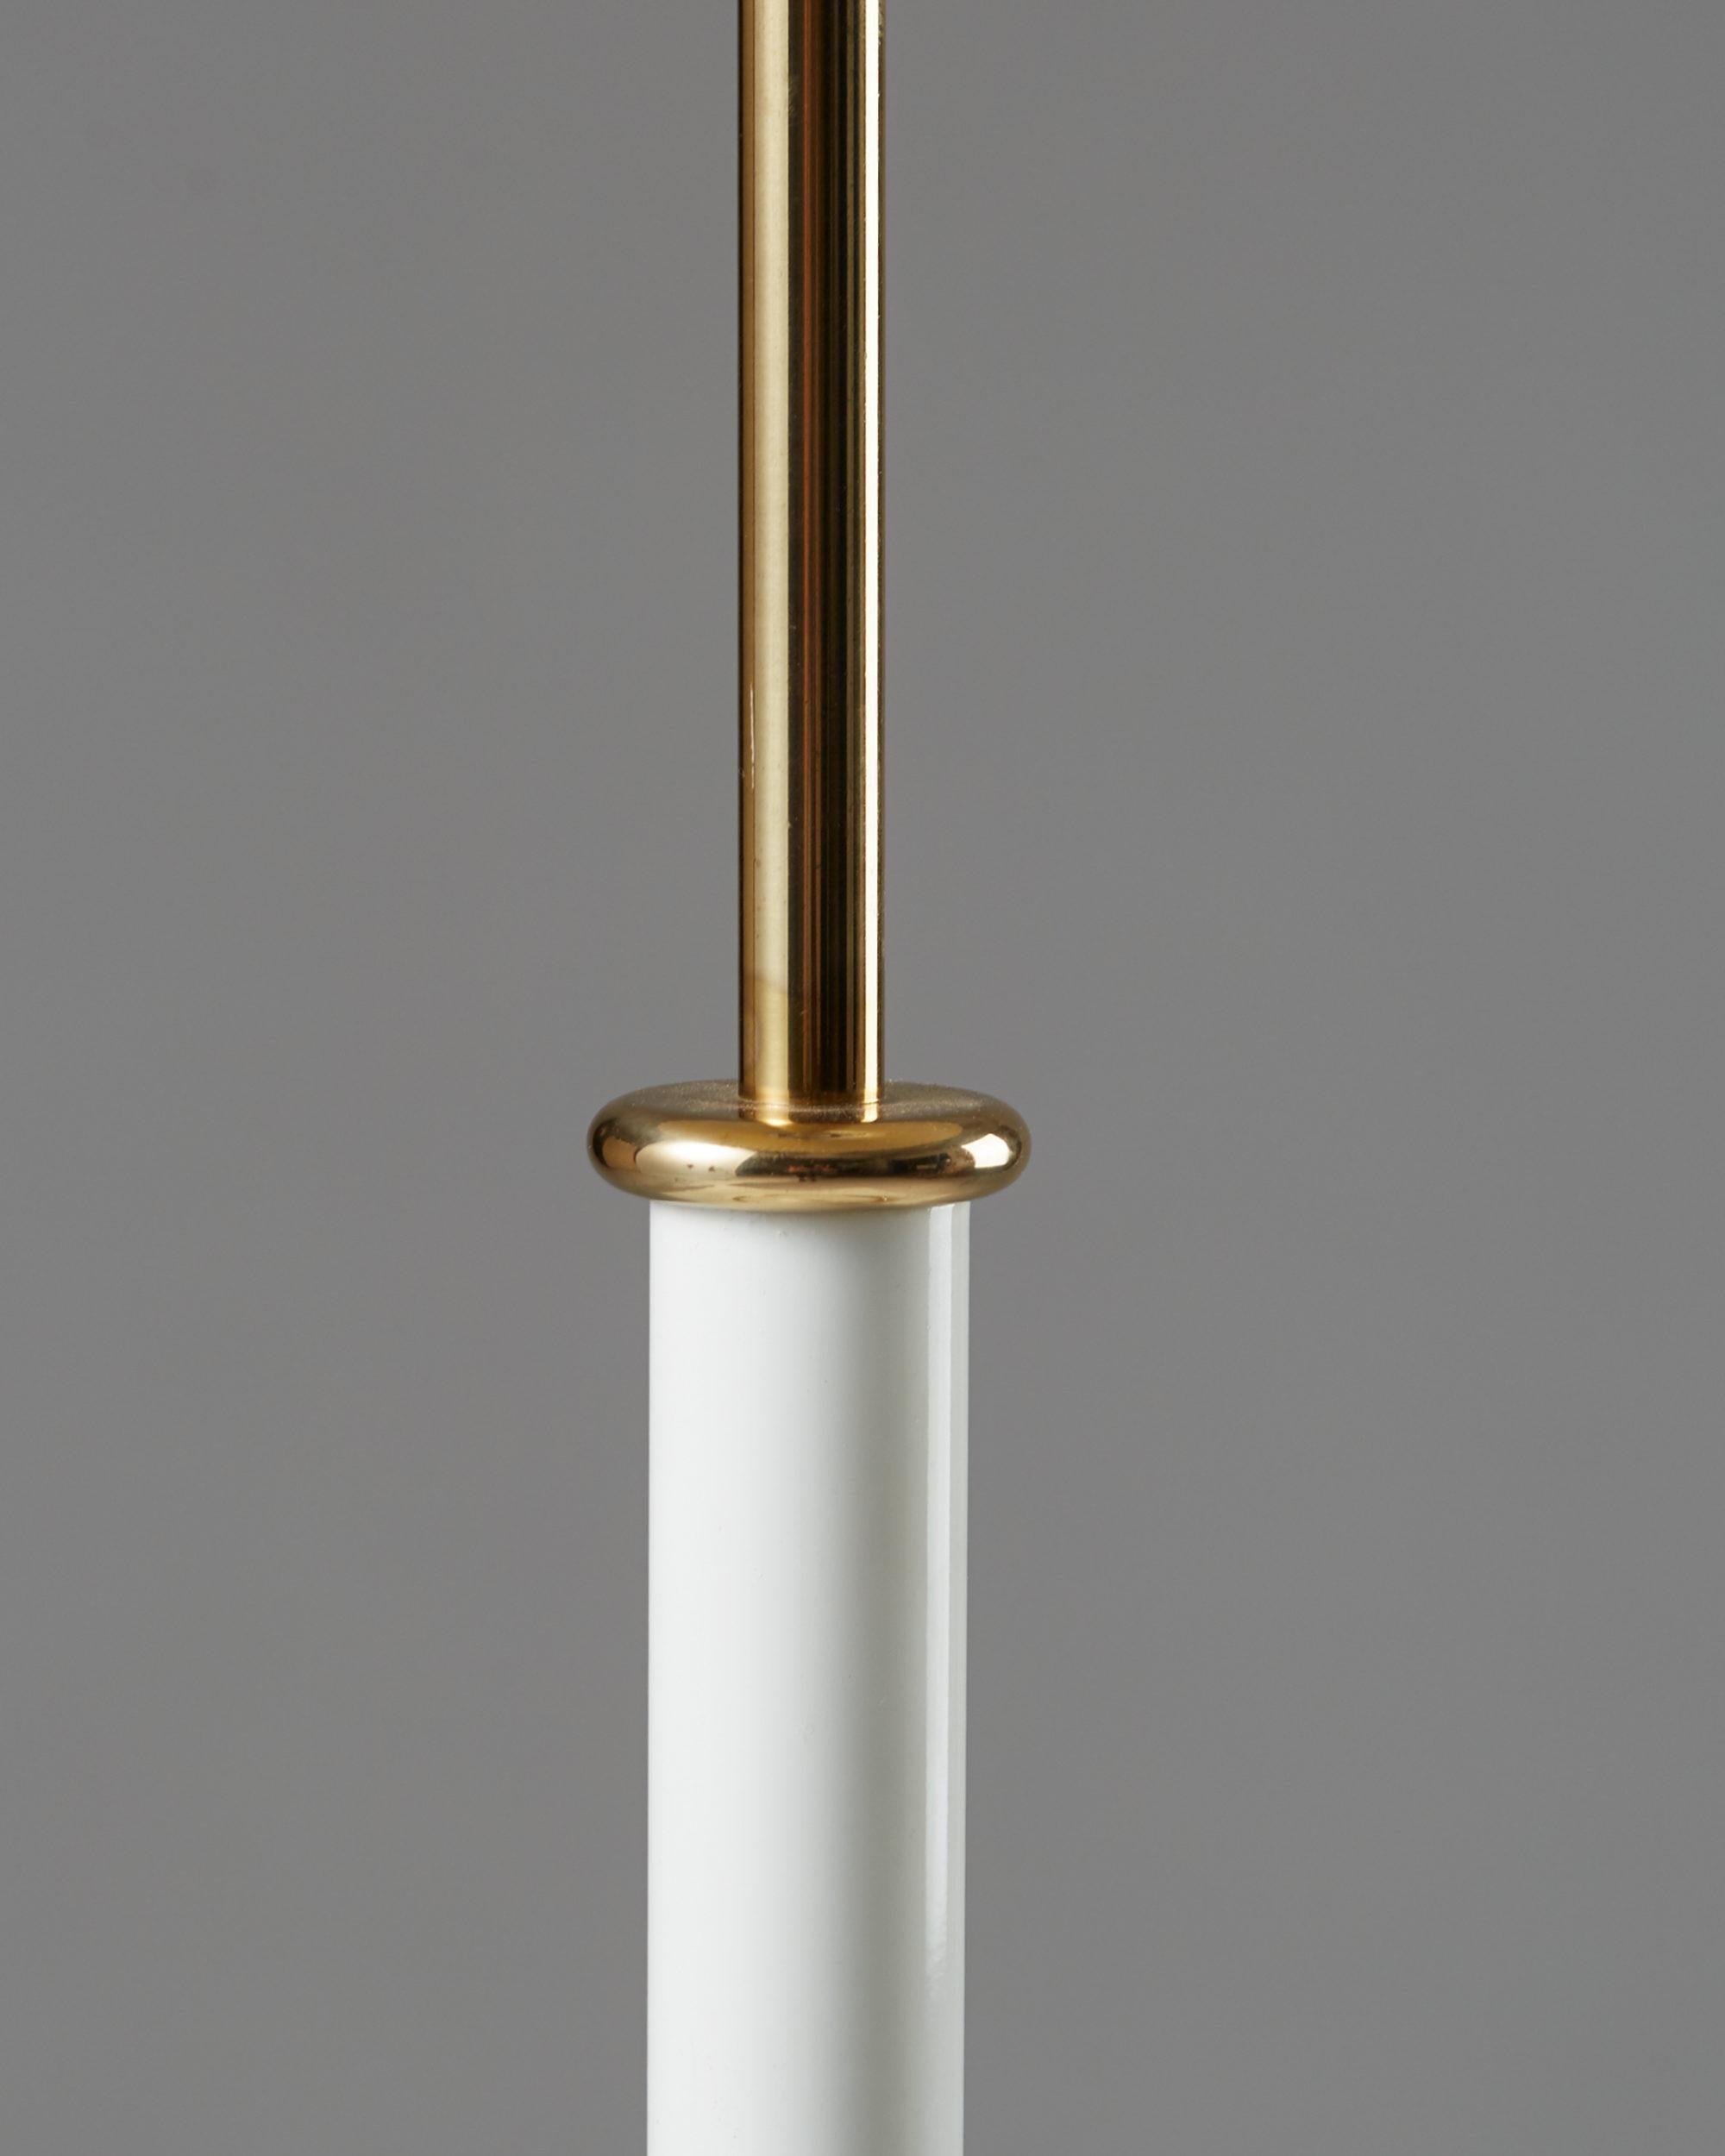 Scandinavian Modern Pair of Table Lamps Model 2466 Designed by Josef Frank for Svenskt Tenn, Sweden